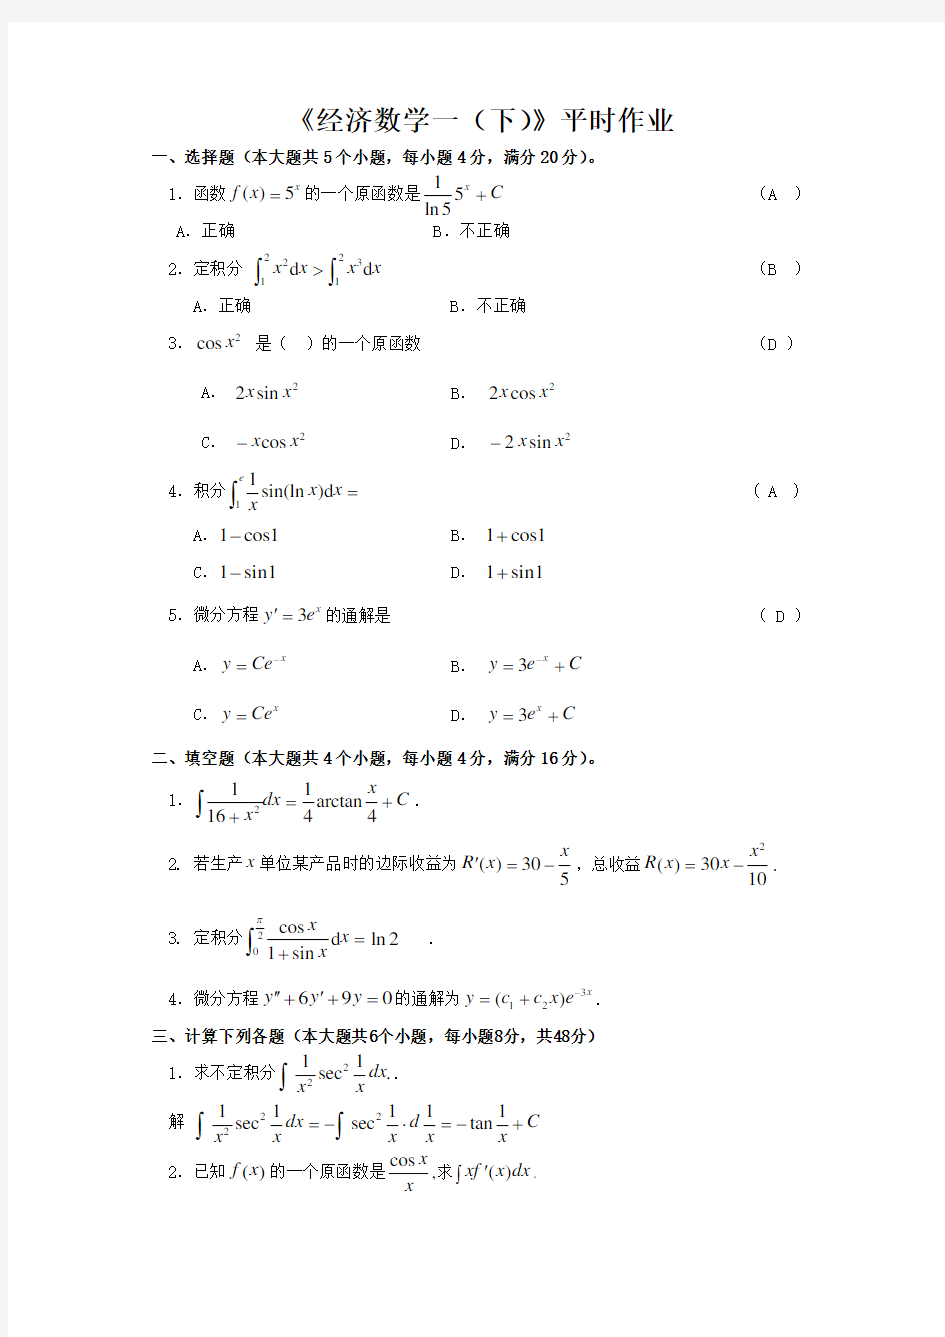 西安电子科技大学-经济数学(一)(下)